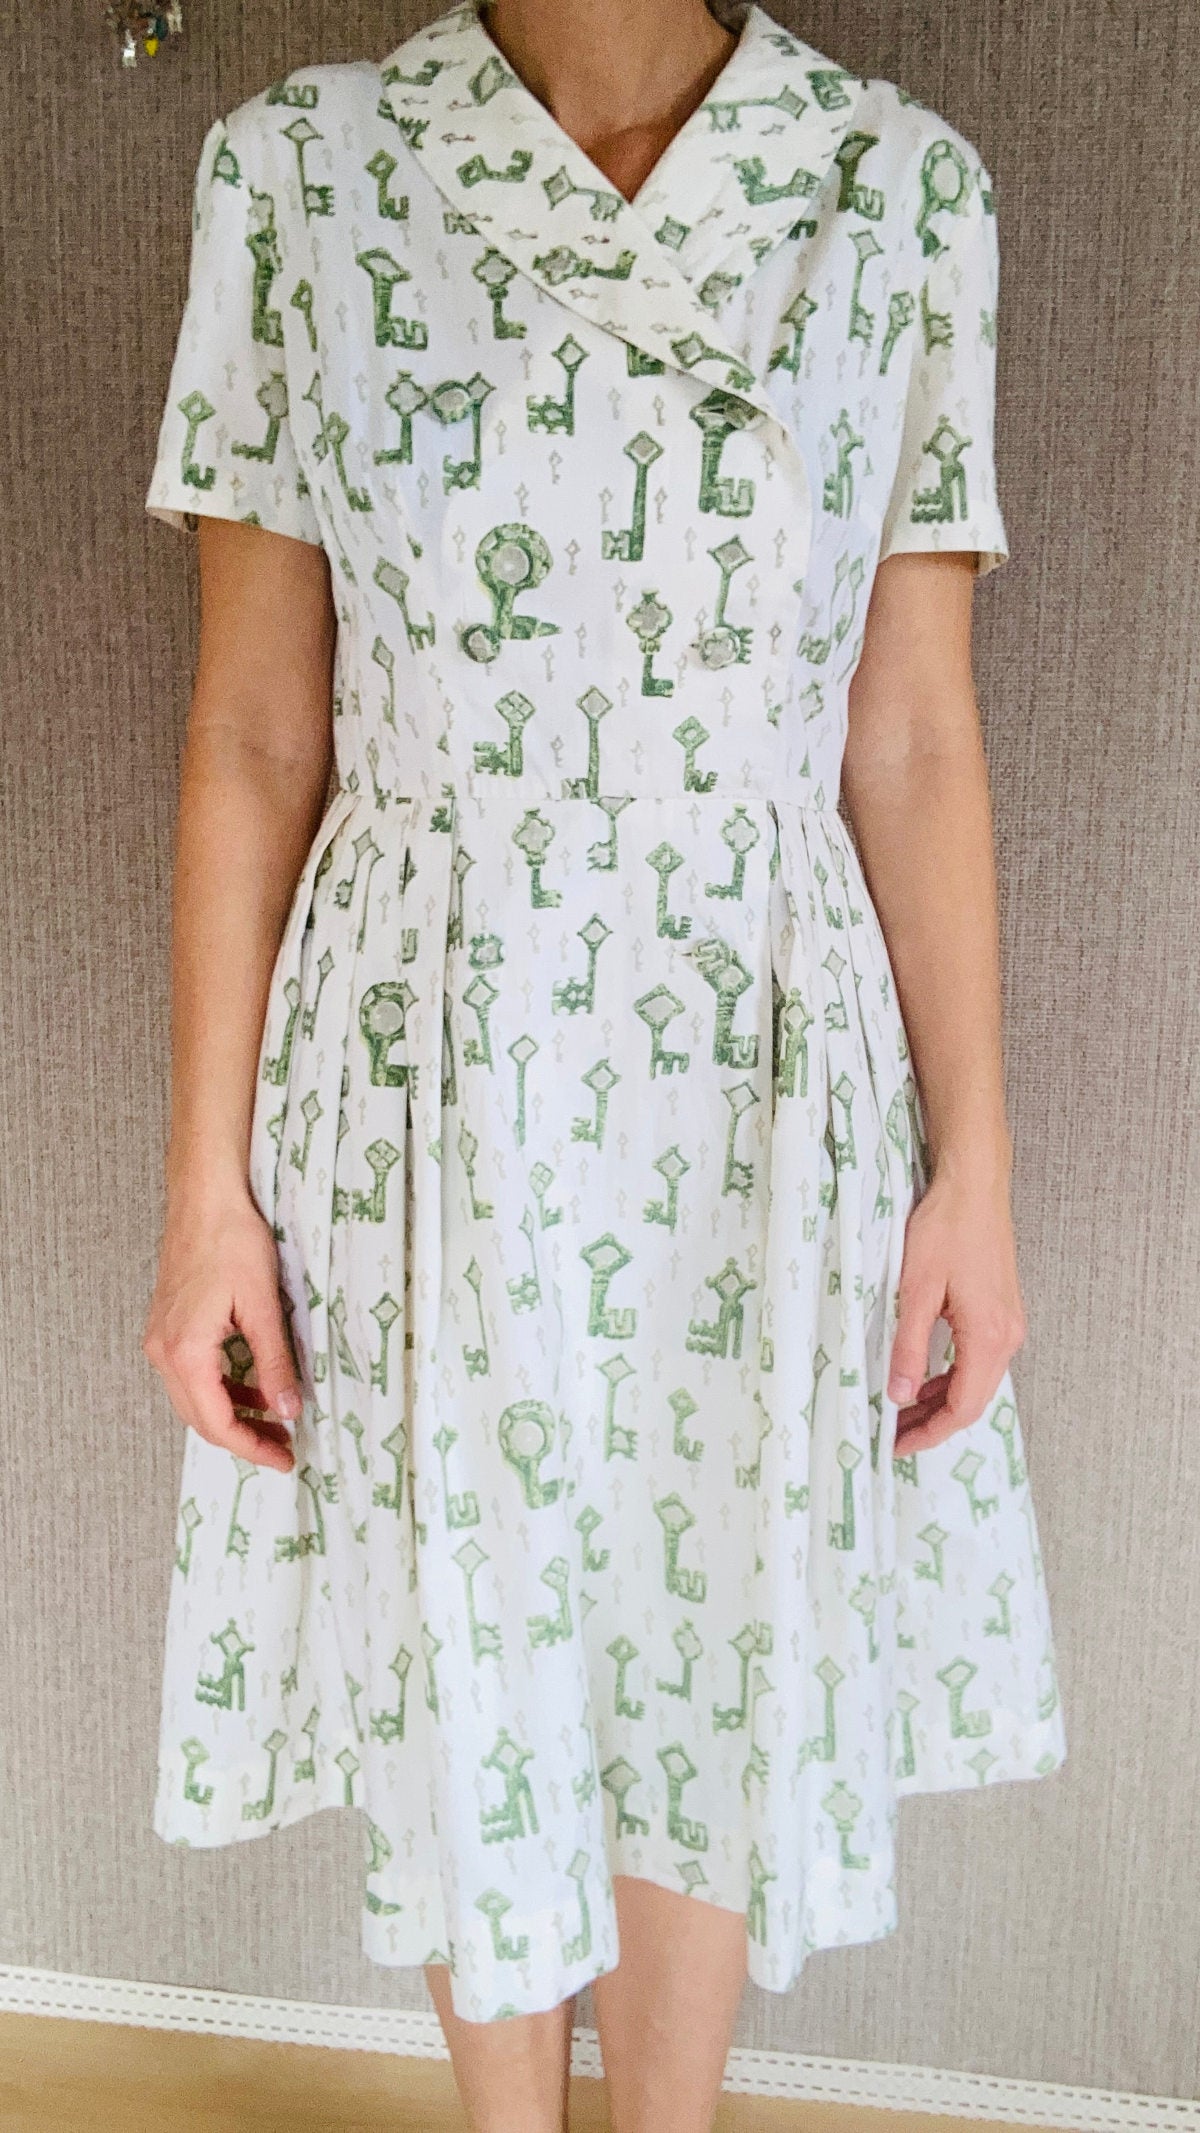 mein herzblut vintage Kleid 1970er Jahre bedruckt mit Schlüssel. Niederbayerischer Online Shop.